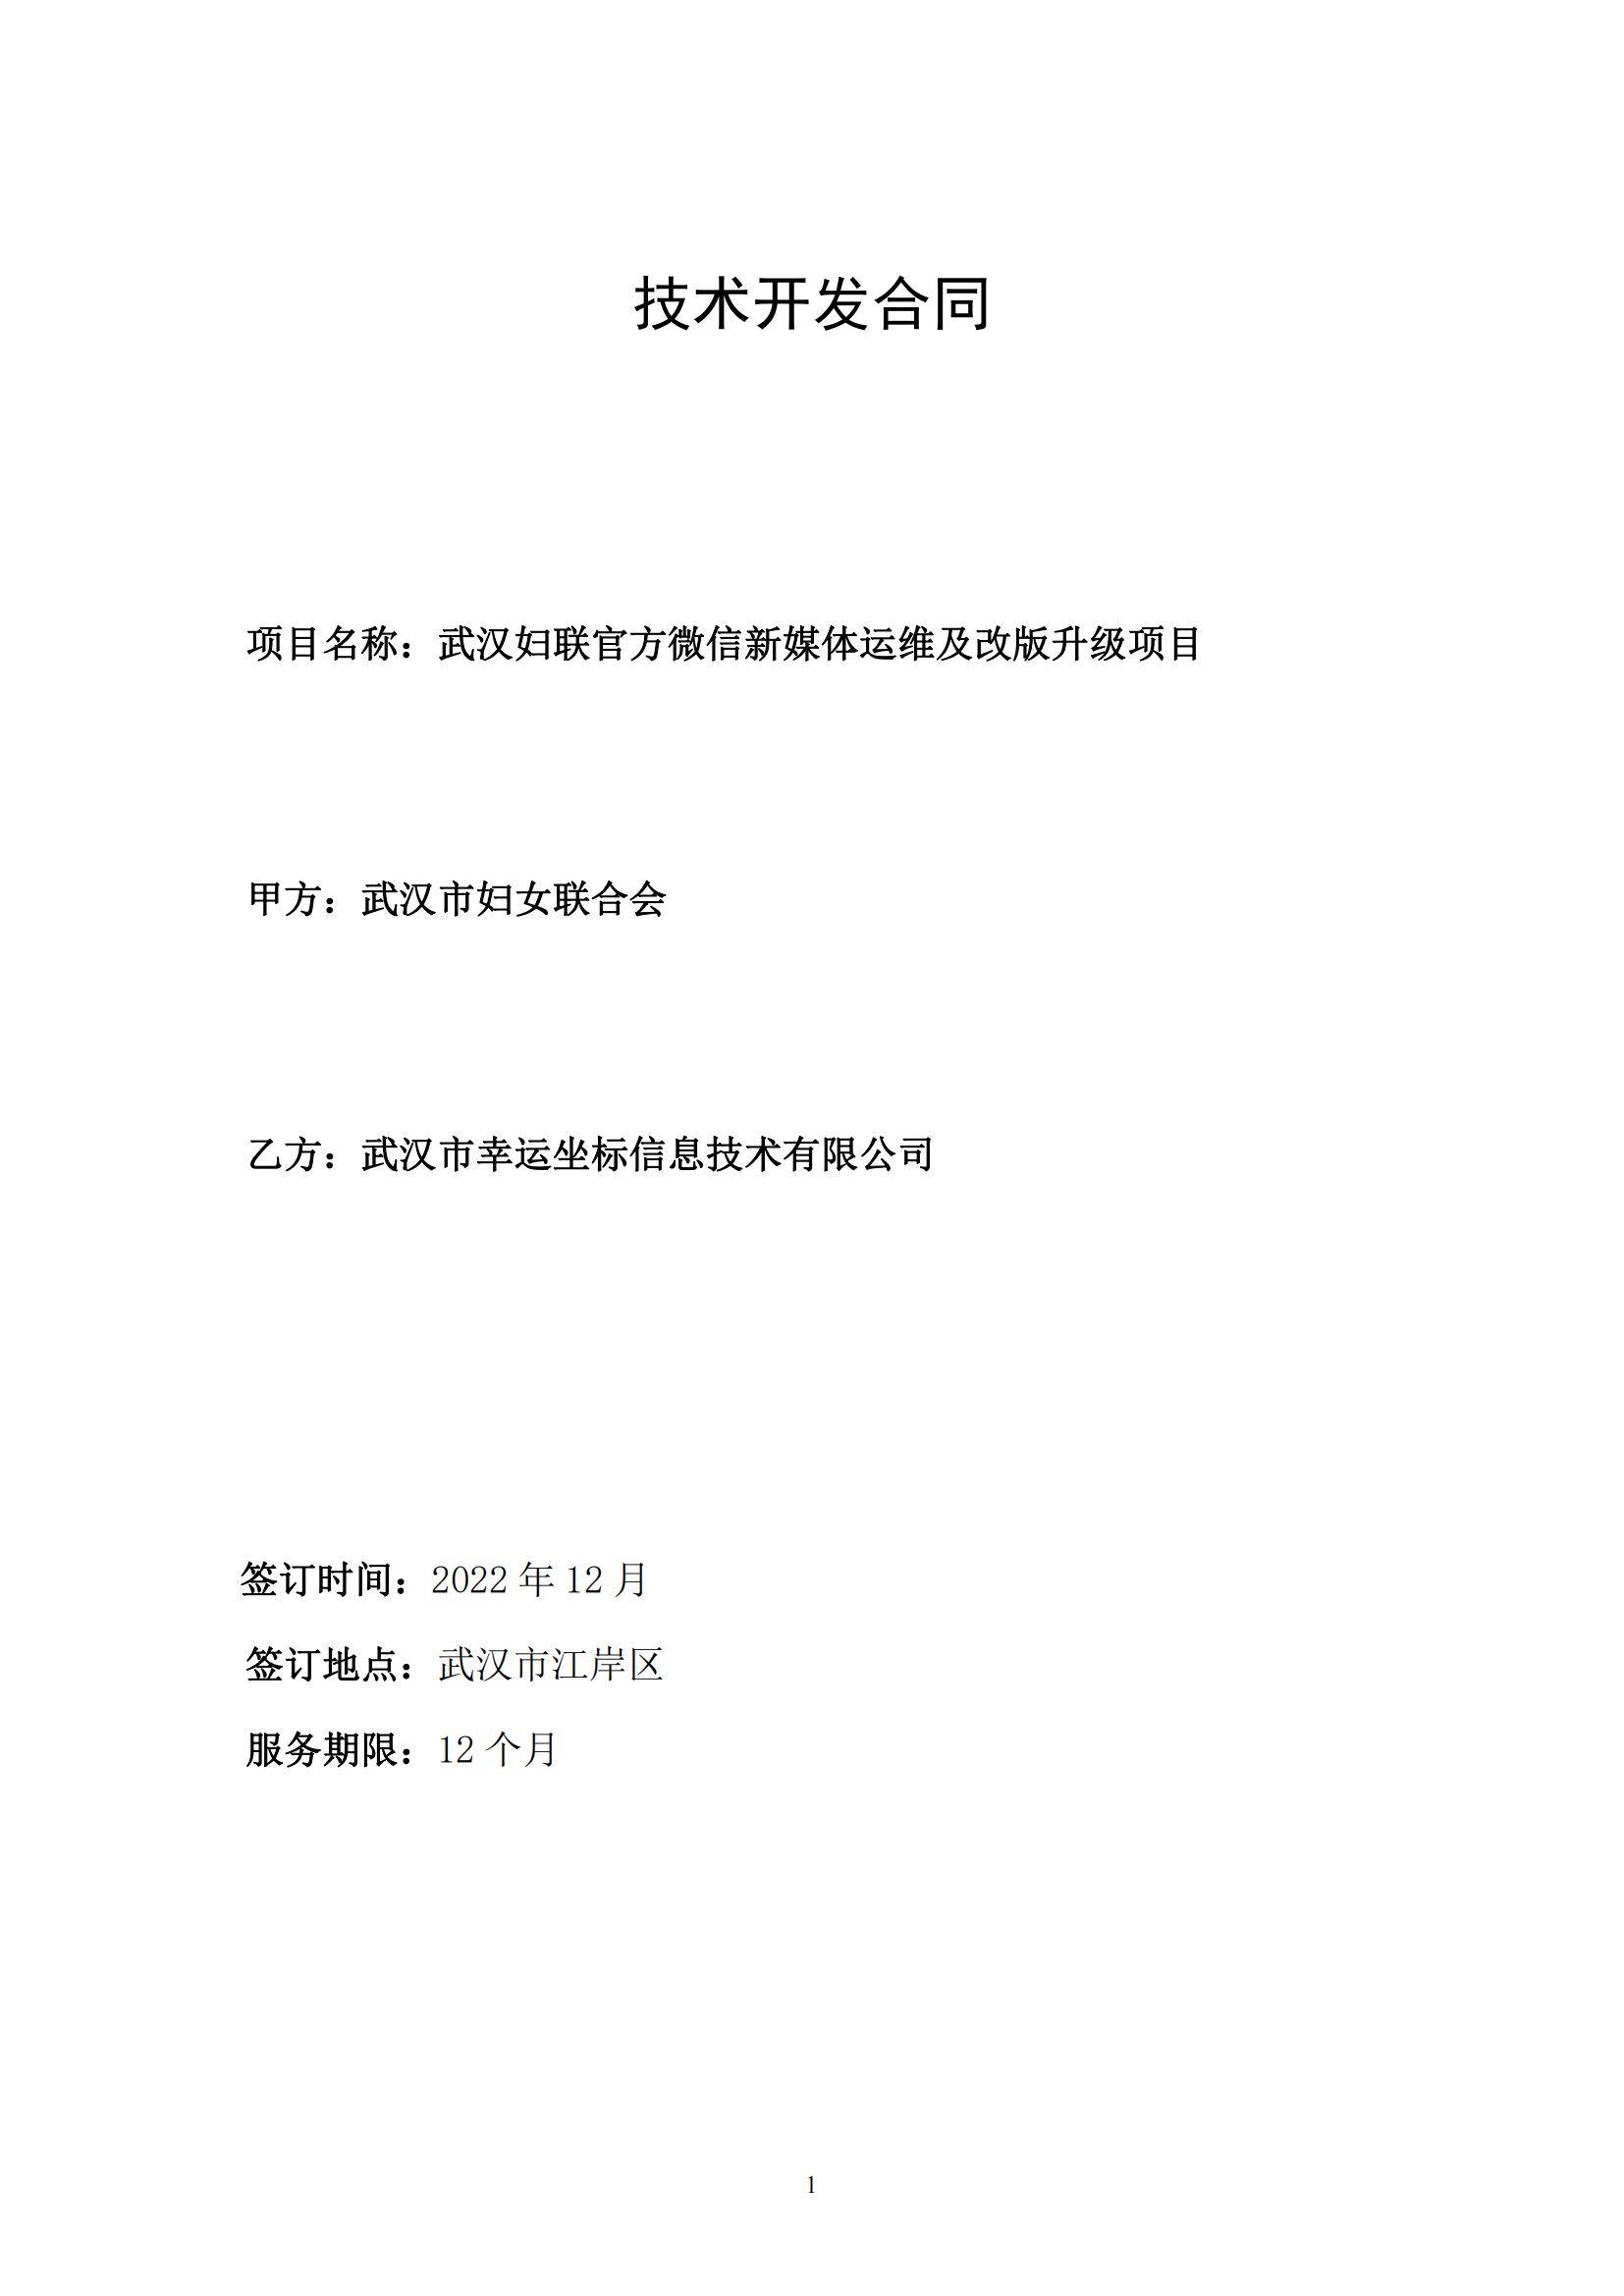 武汉妇联官方微信新媒体运维及改版升级项目合同_00.png